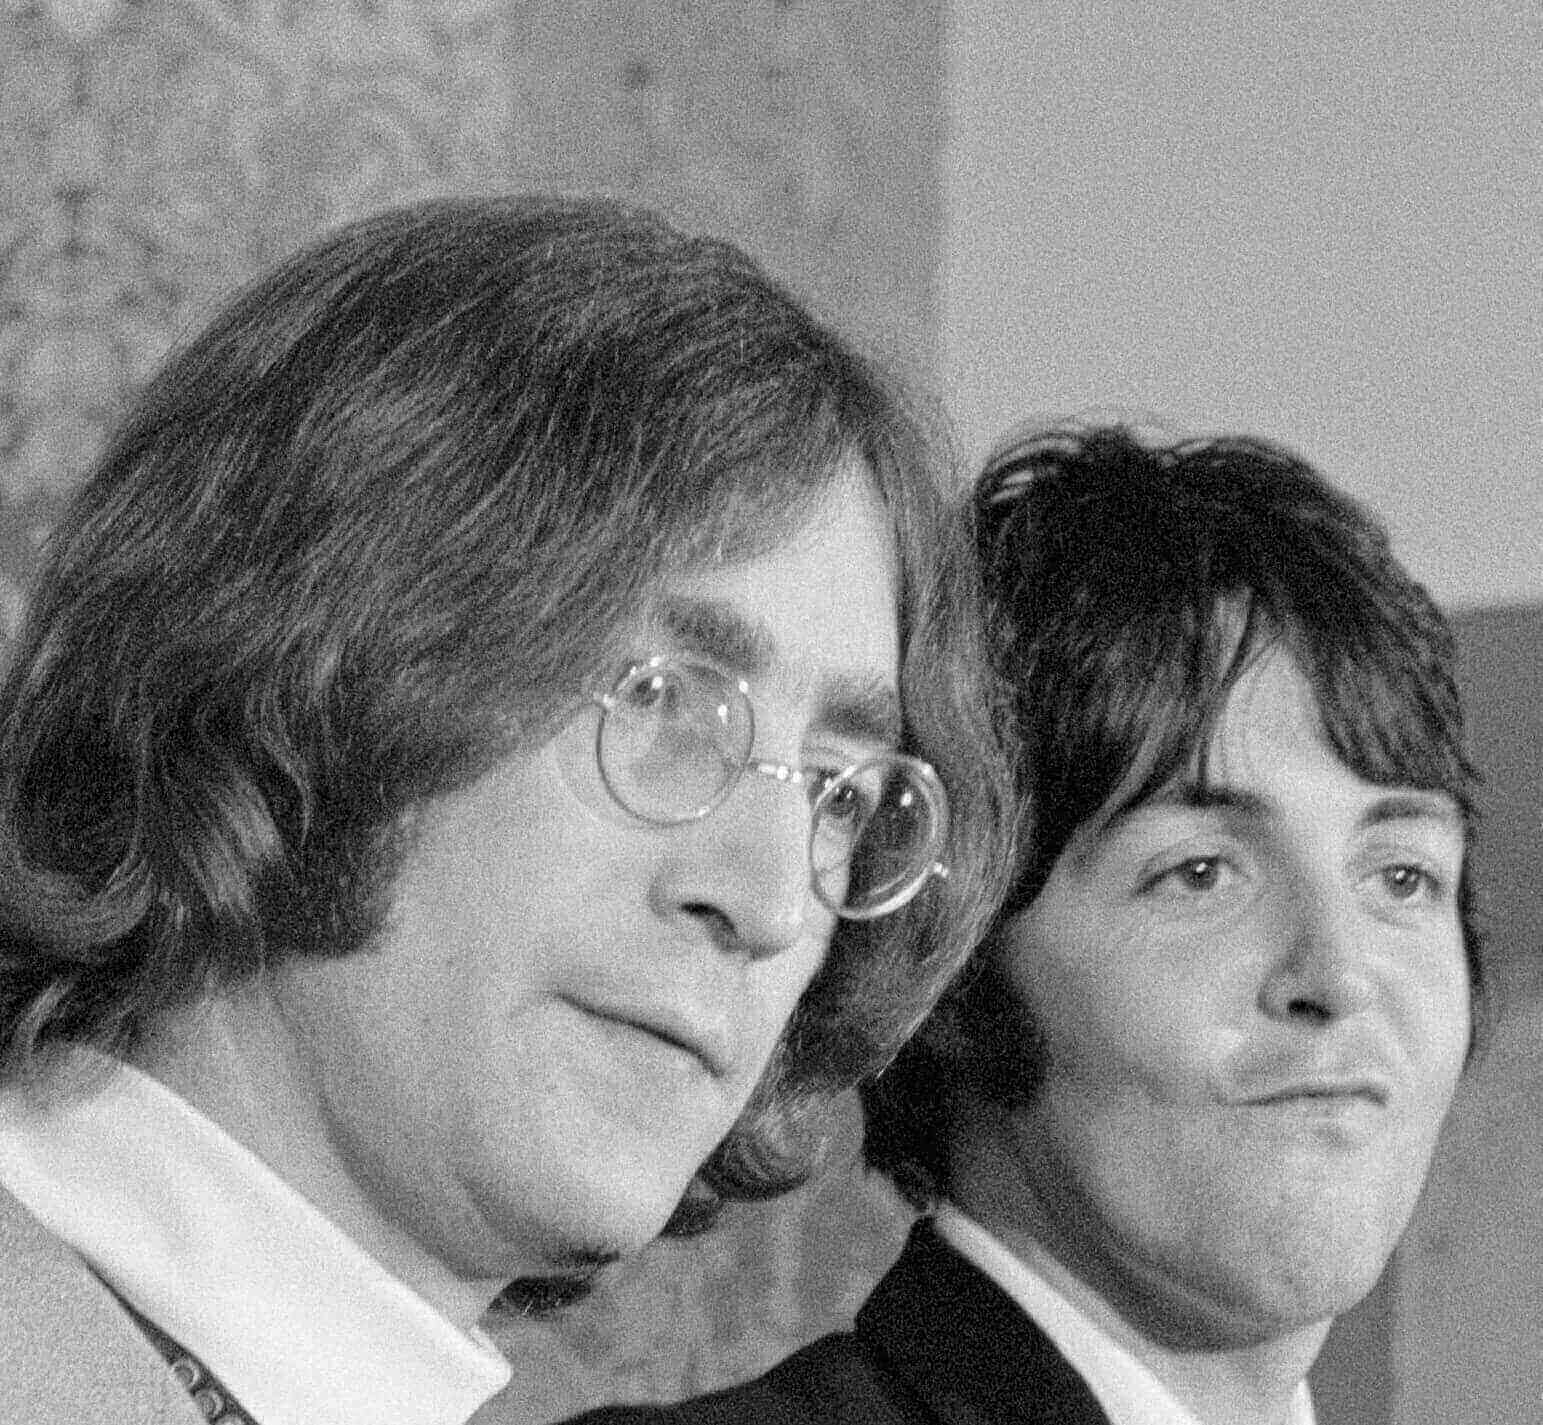 The Beatles' John Lennon and Paul McCartney in black-and-white